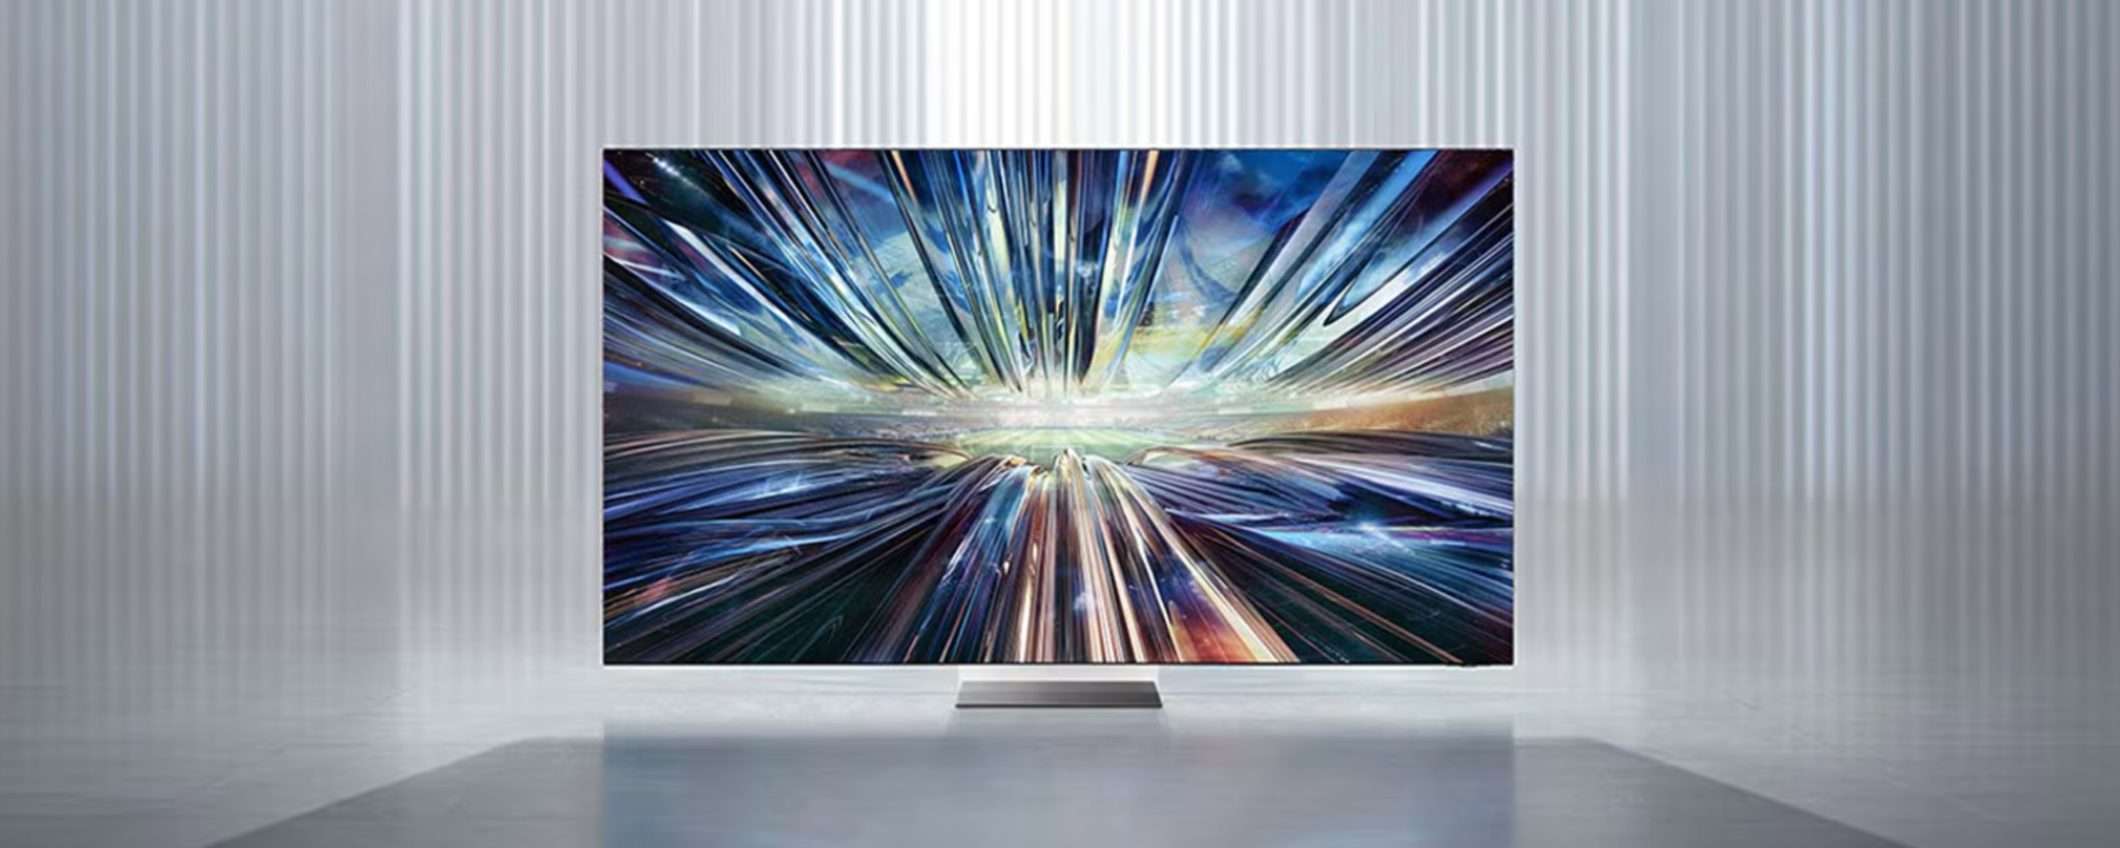 Nuovo Smart TV? Il codice sconto esclusivo Samsung scade oggi!